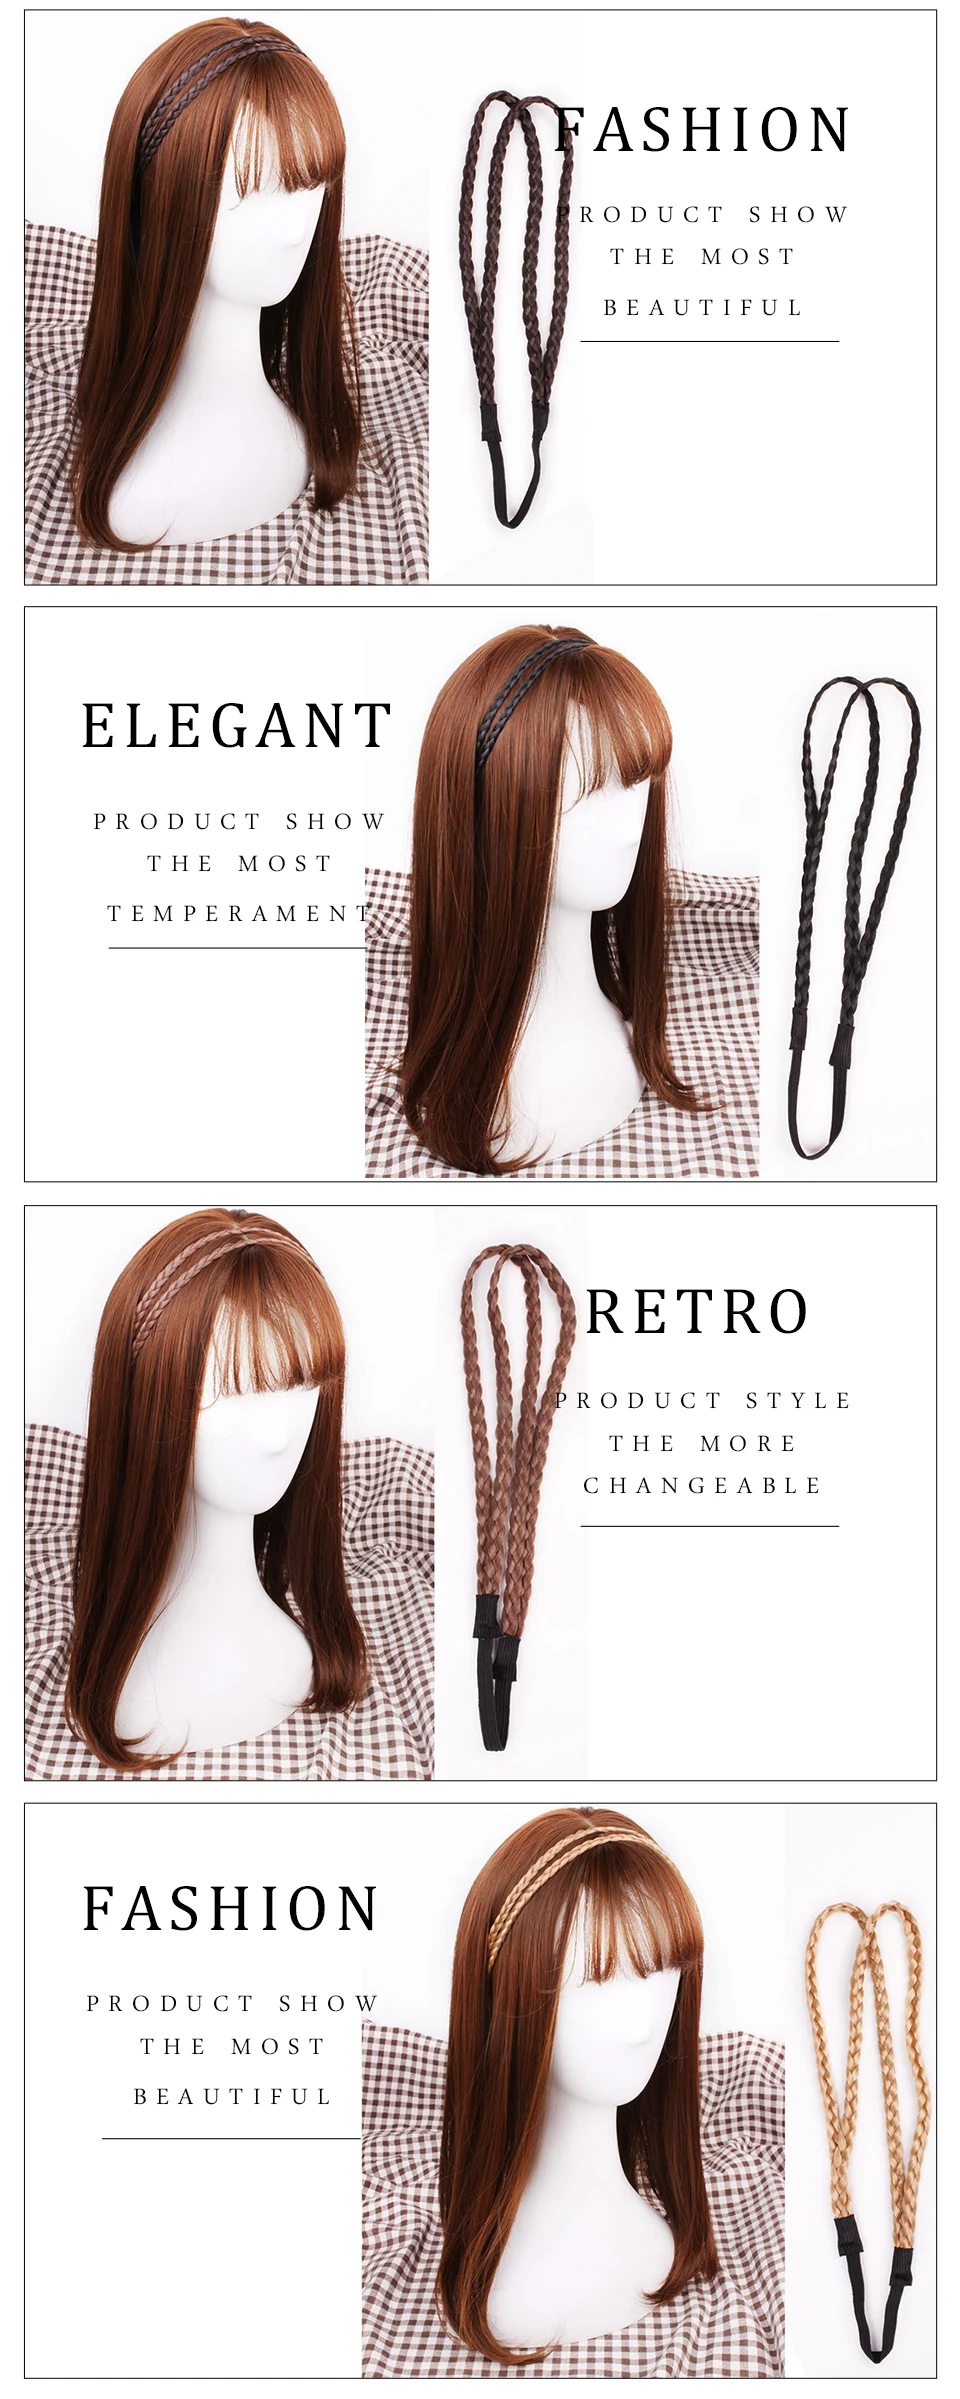 Haimeikang синтетический парик, крученые резинки для волос, модные косички, аксессуары для волос, женские богемные плетеные эластичные повязки на голову, стрейч-бандана